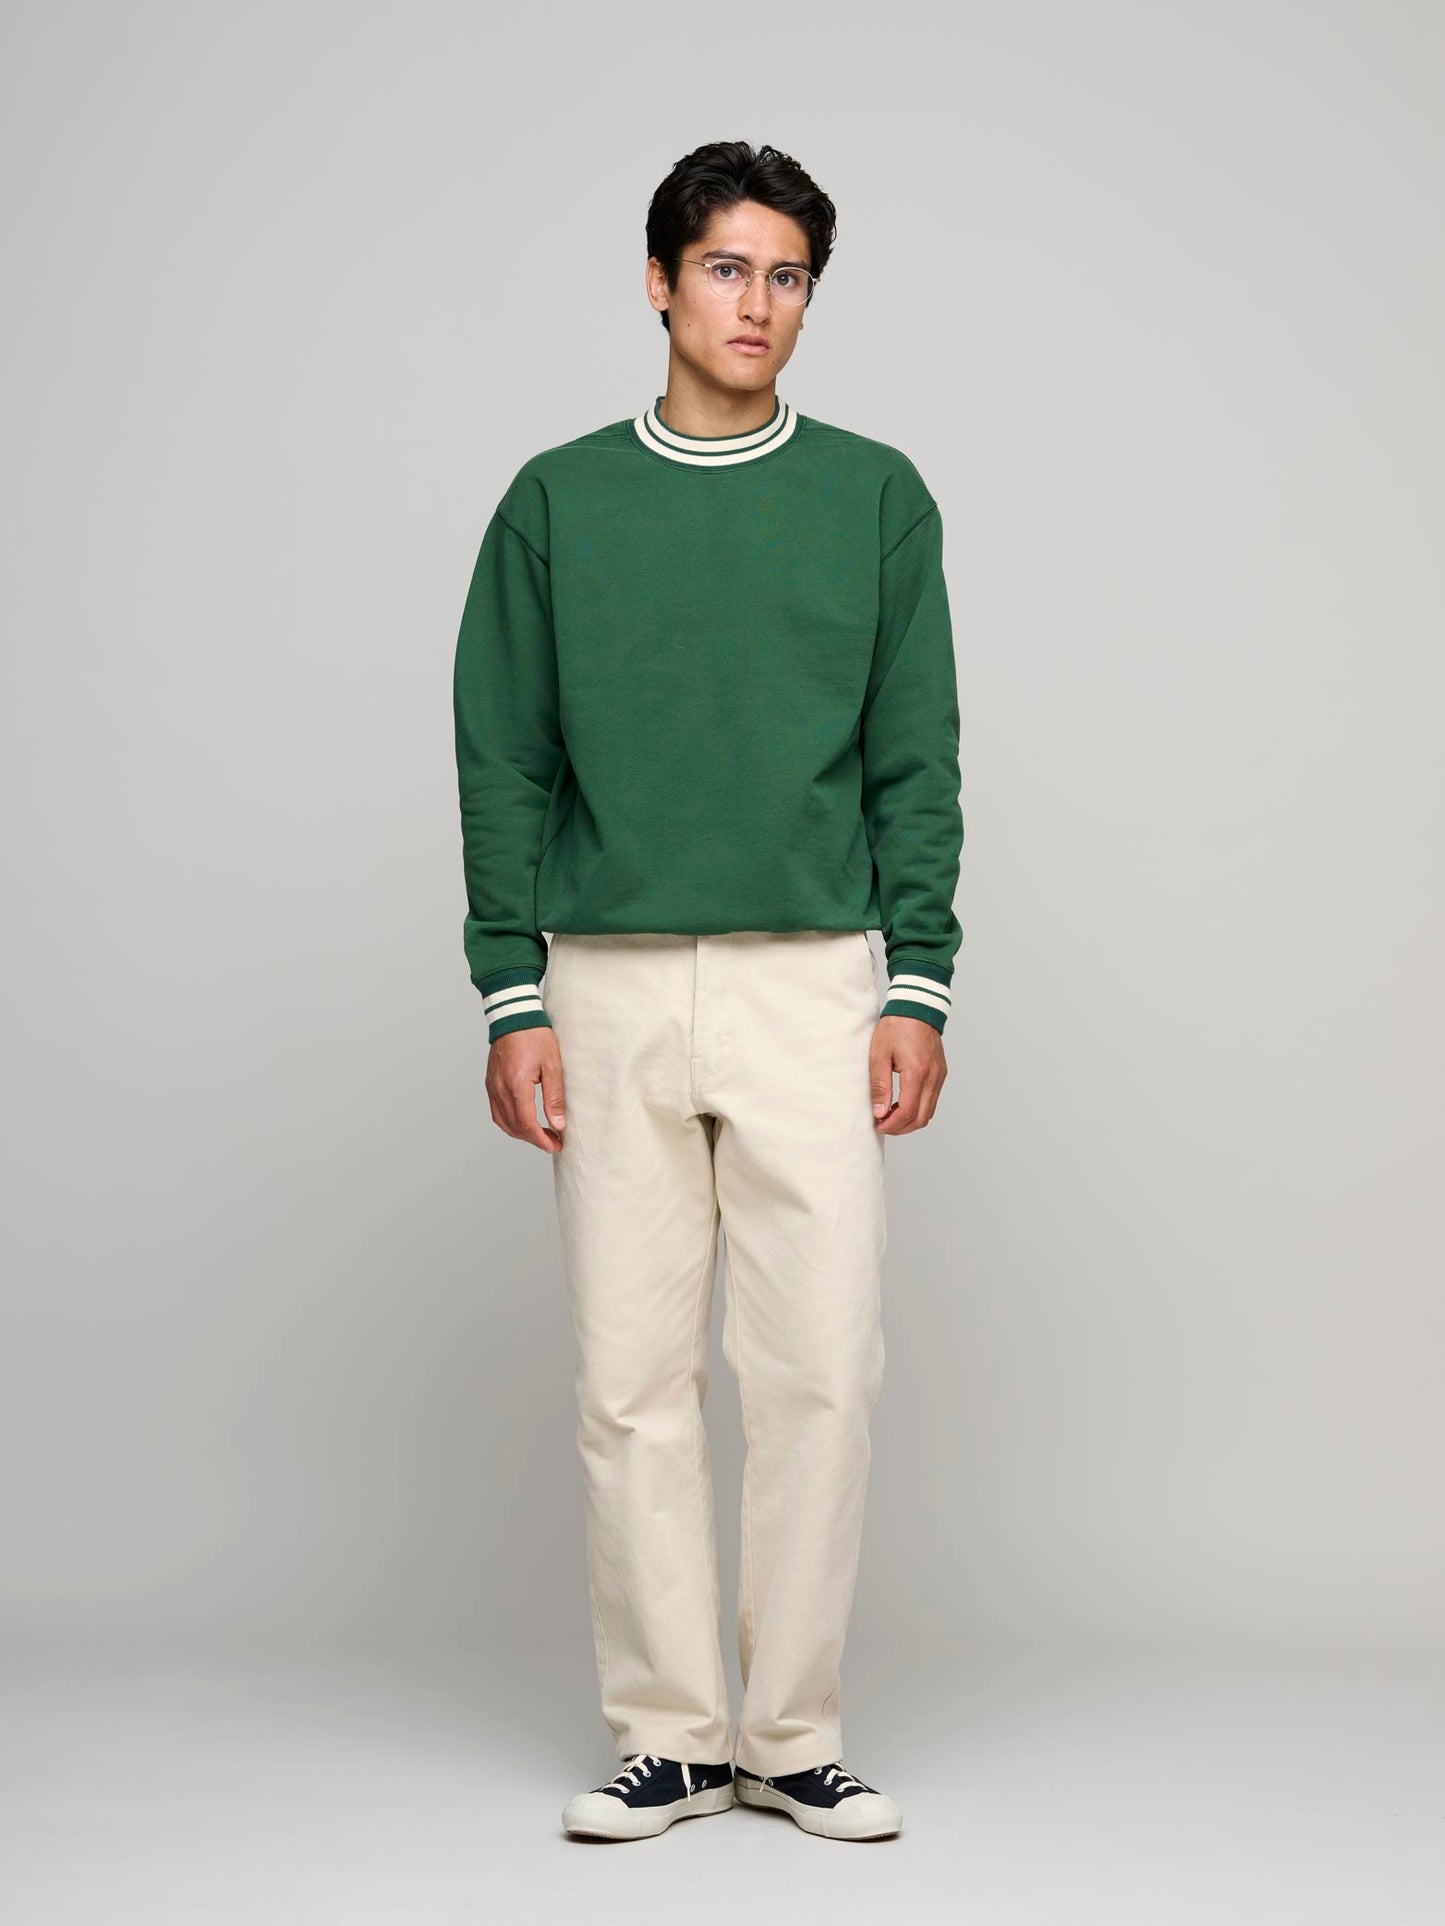 Striped Rib L/S Sweatshirt, Green & Ecru